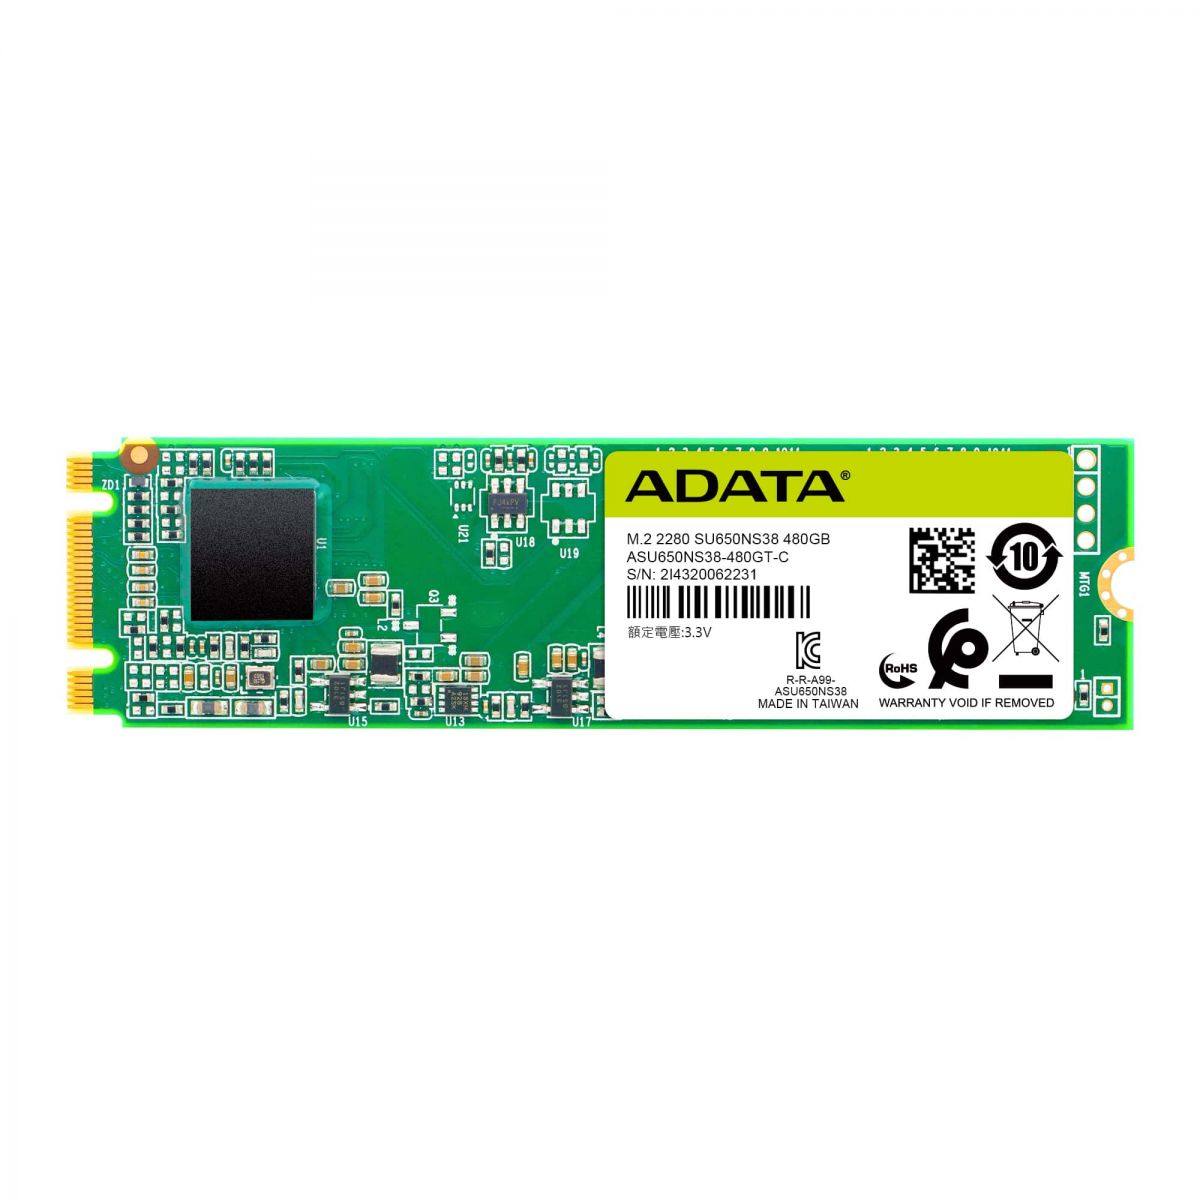 SSD ADATA SU650 480GB M2 SATA